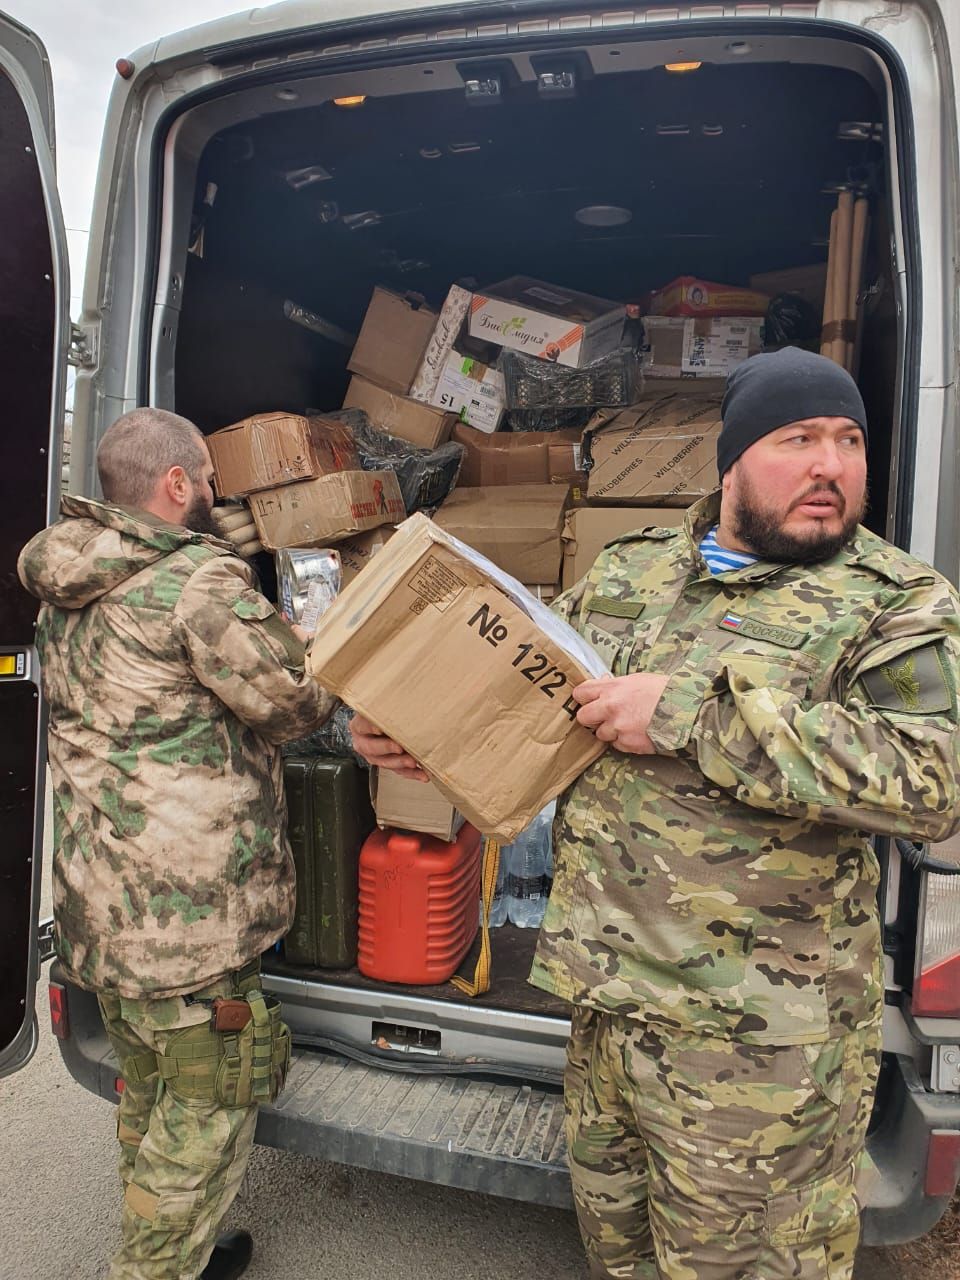 Священнослужители отправились в Донецк для передачи гуманитарного груза